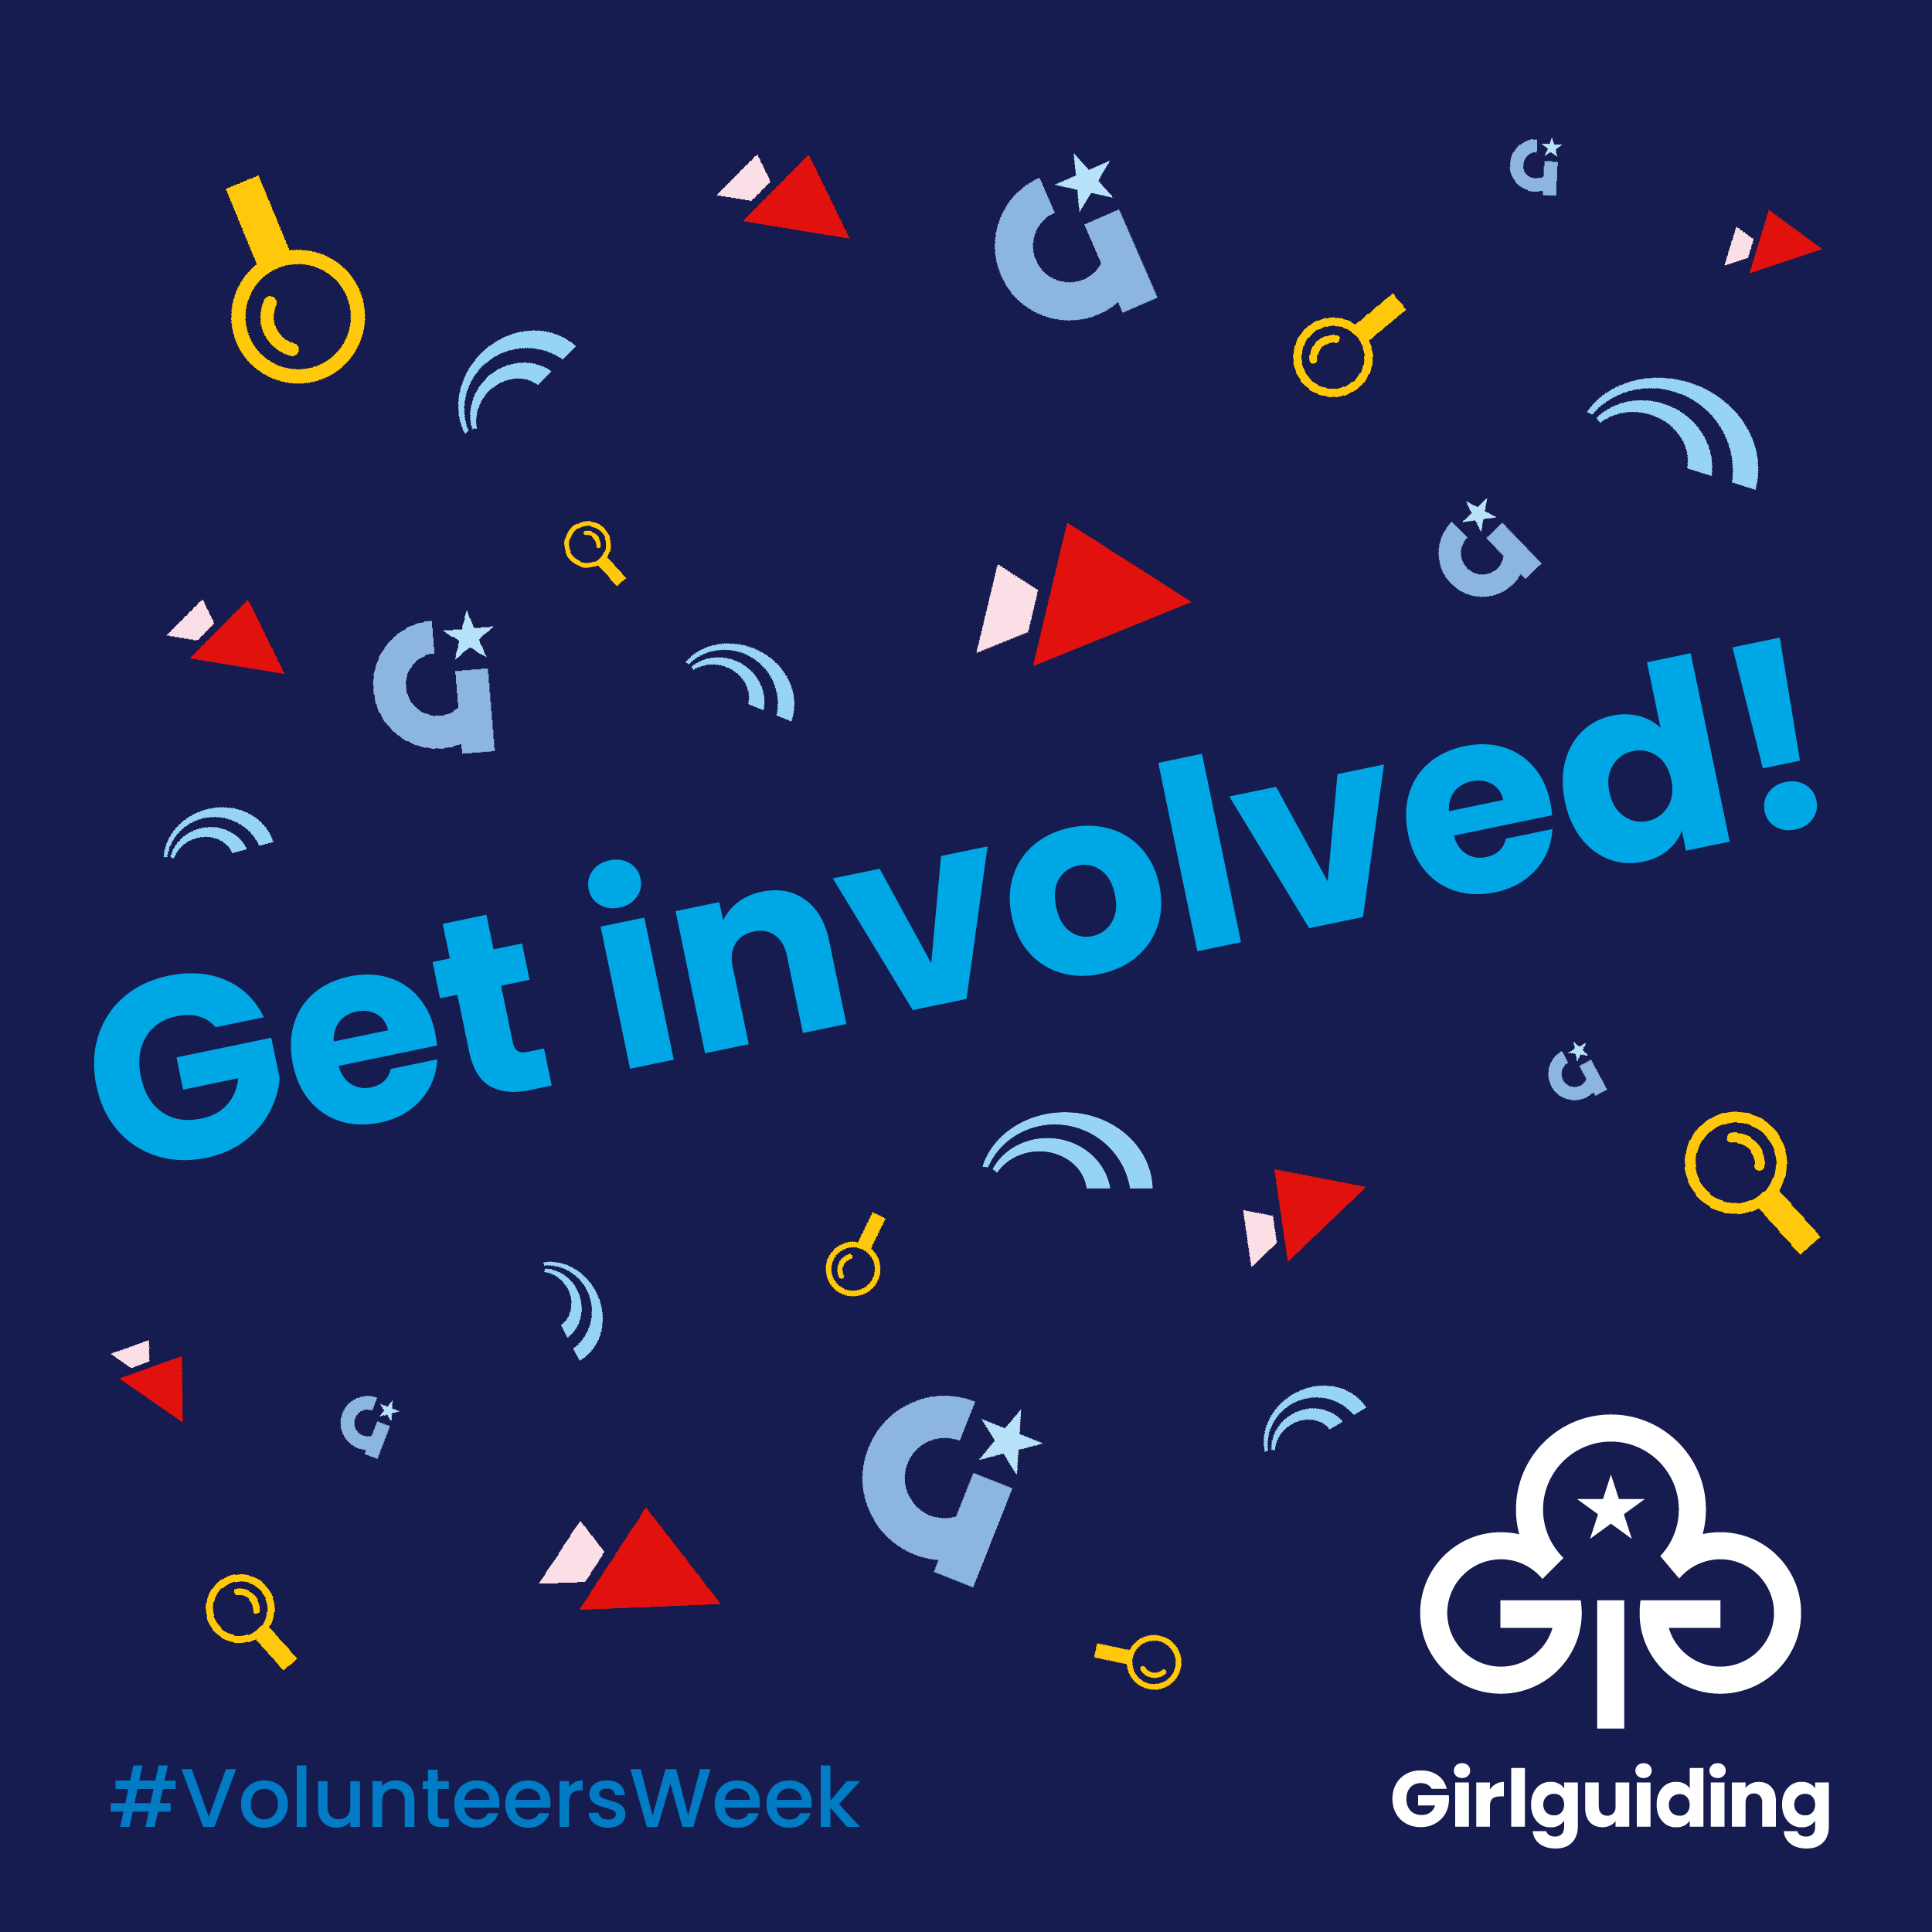 Girlguiding - Get Involved, Volunteers Week